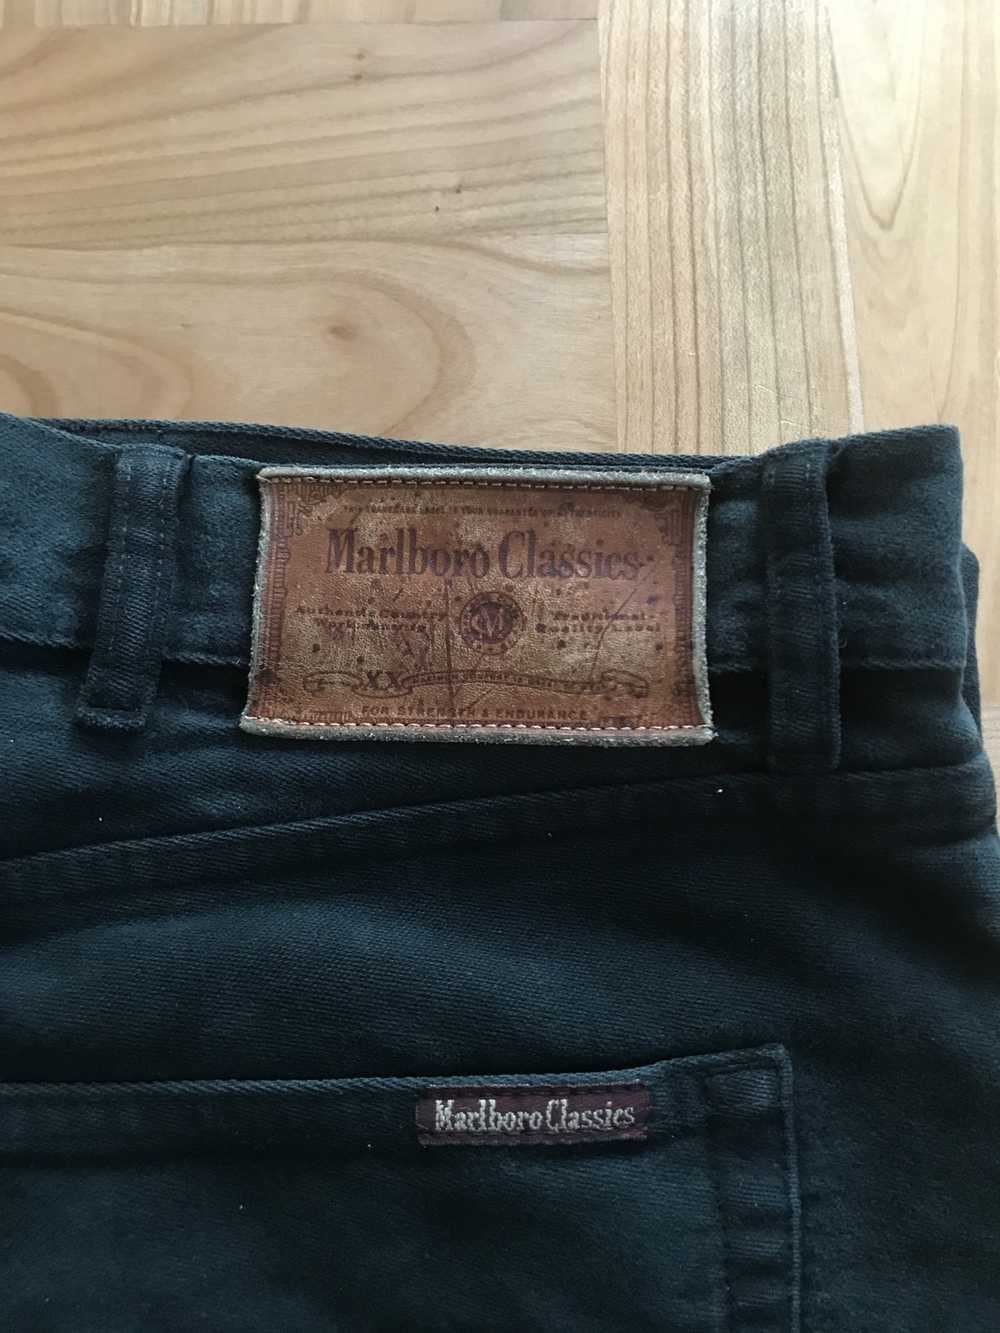 Marlboro × Vintage Marlboro Classics pants - image 1